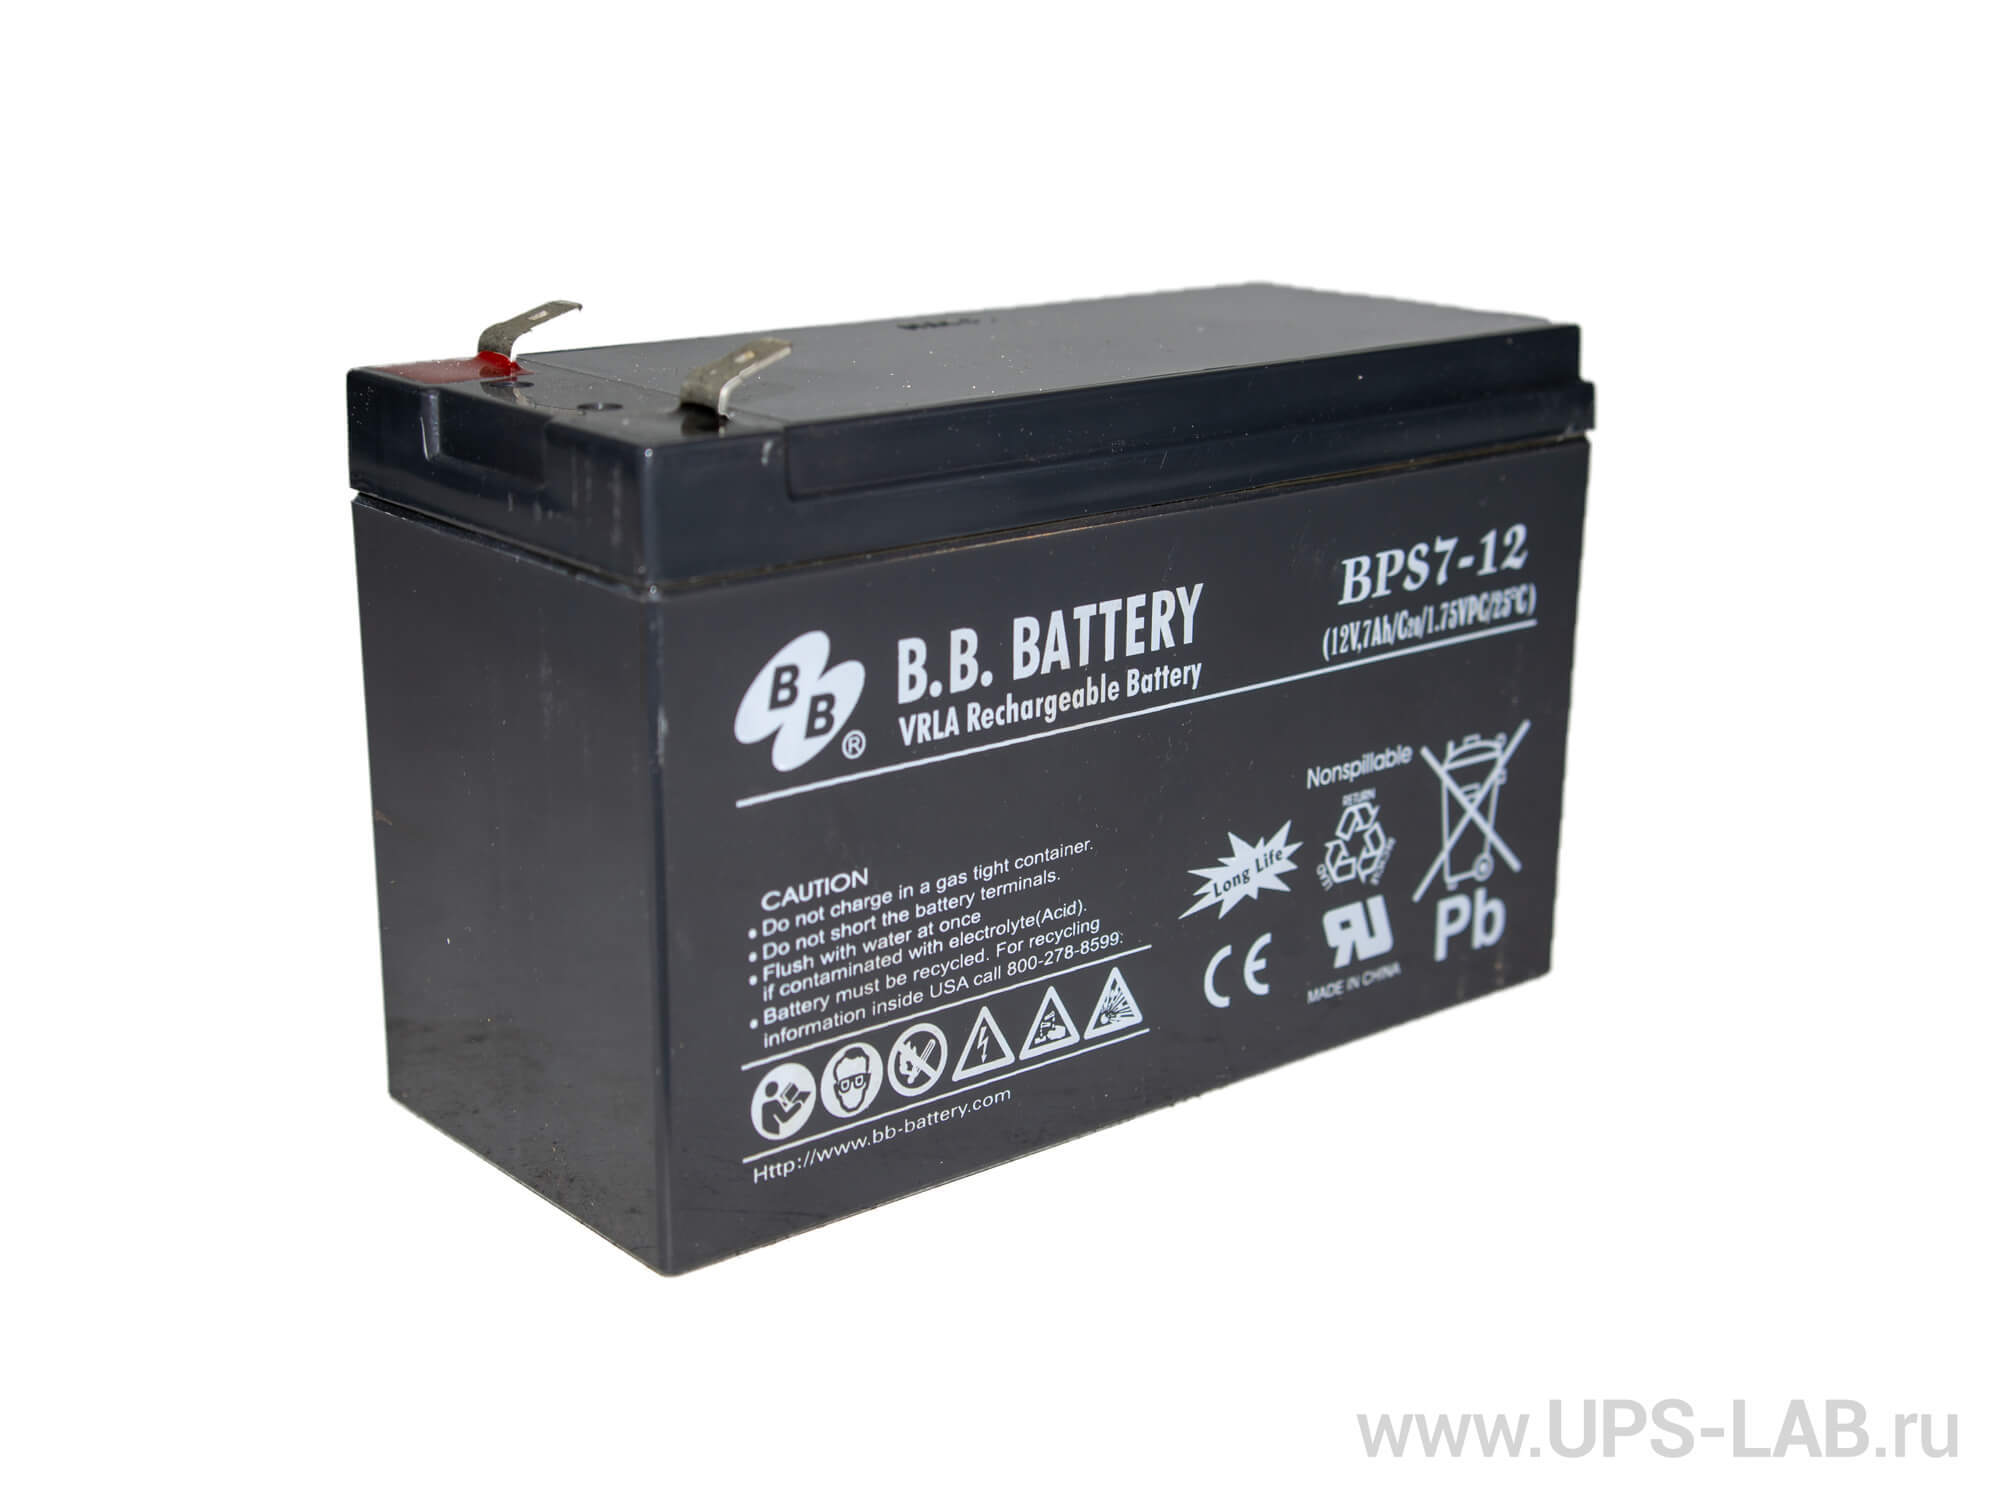 Ptk battery 12 12